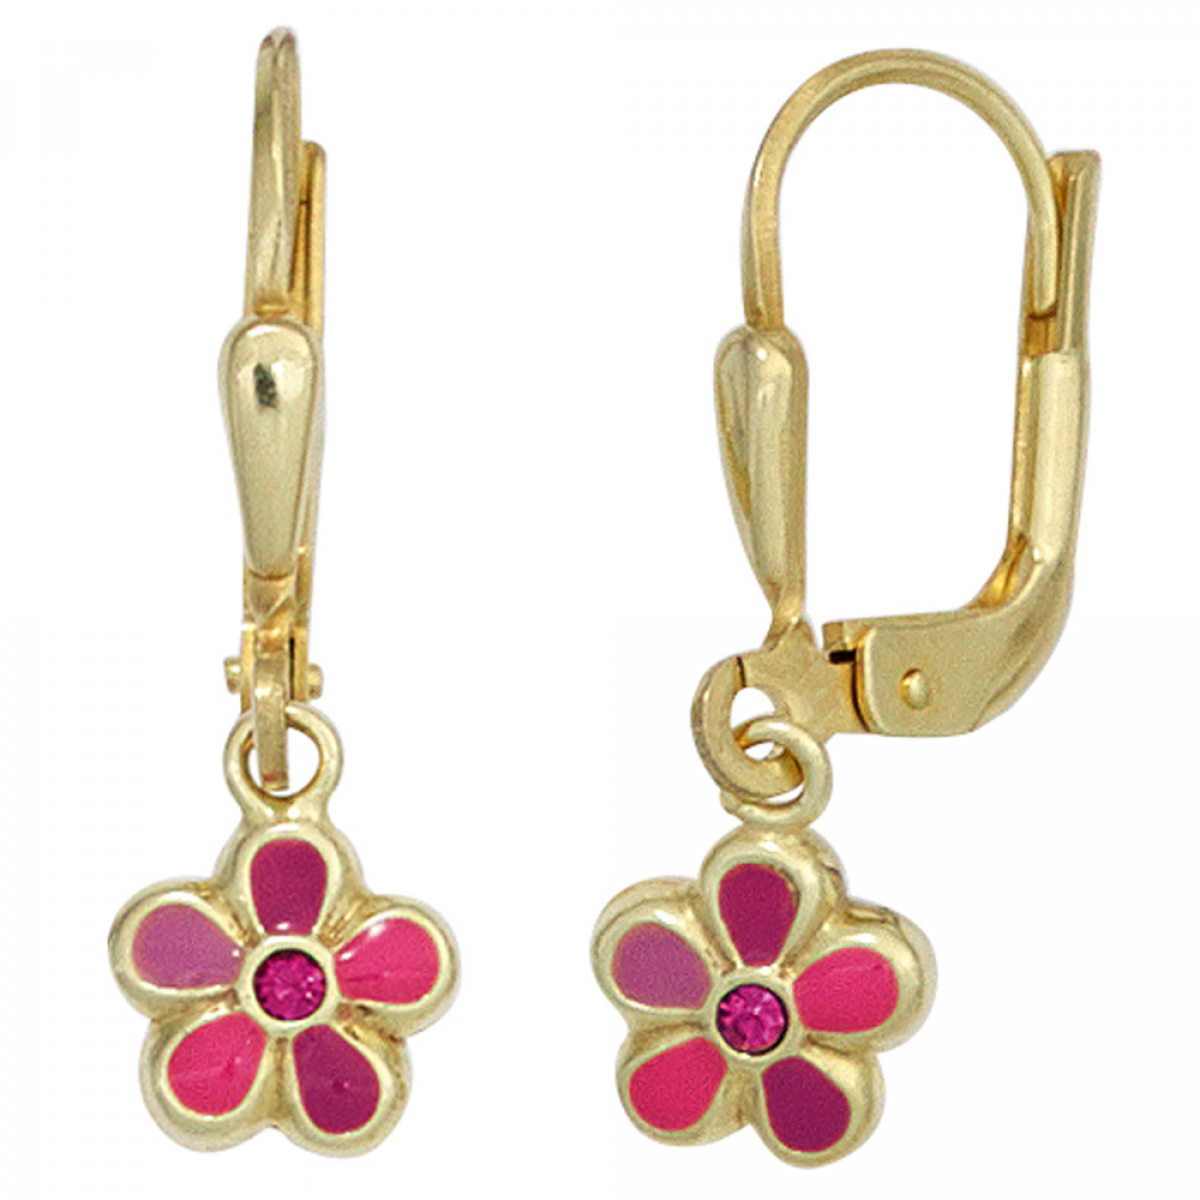 Mädchen Blumen Kinder Ohrstecker Zirkonia pink Ohrringe aus Echt Gold 333 8 Kt 